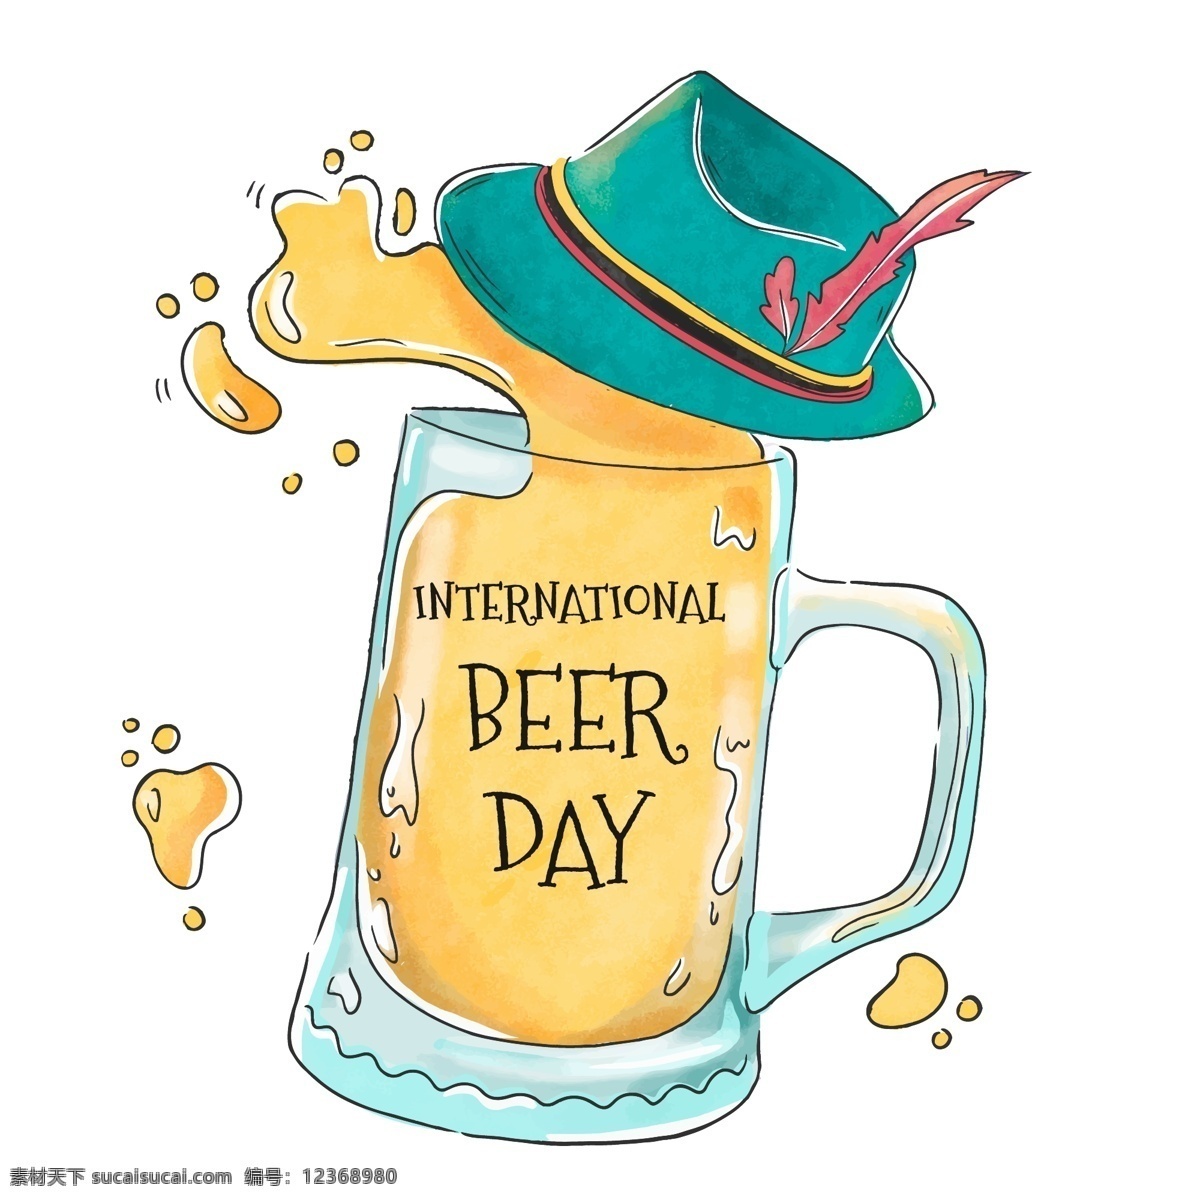 手绘卡通啤酒 手绘 啤酒 饮料 酒 啤酒素材 啤酒背景 卡通啤酒 手绘啤酒 啤酒杯 啤酒文化 啤酒节 卡通设计